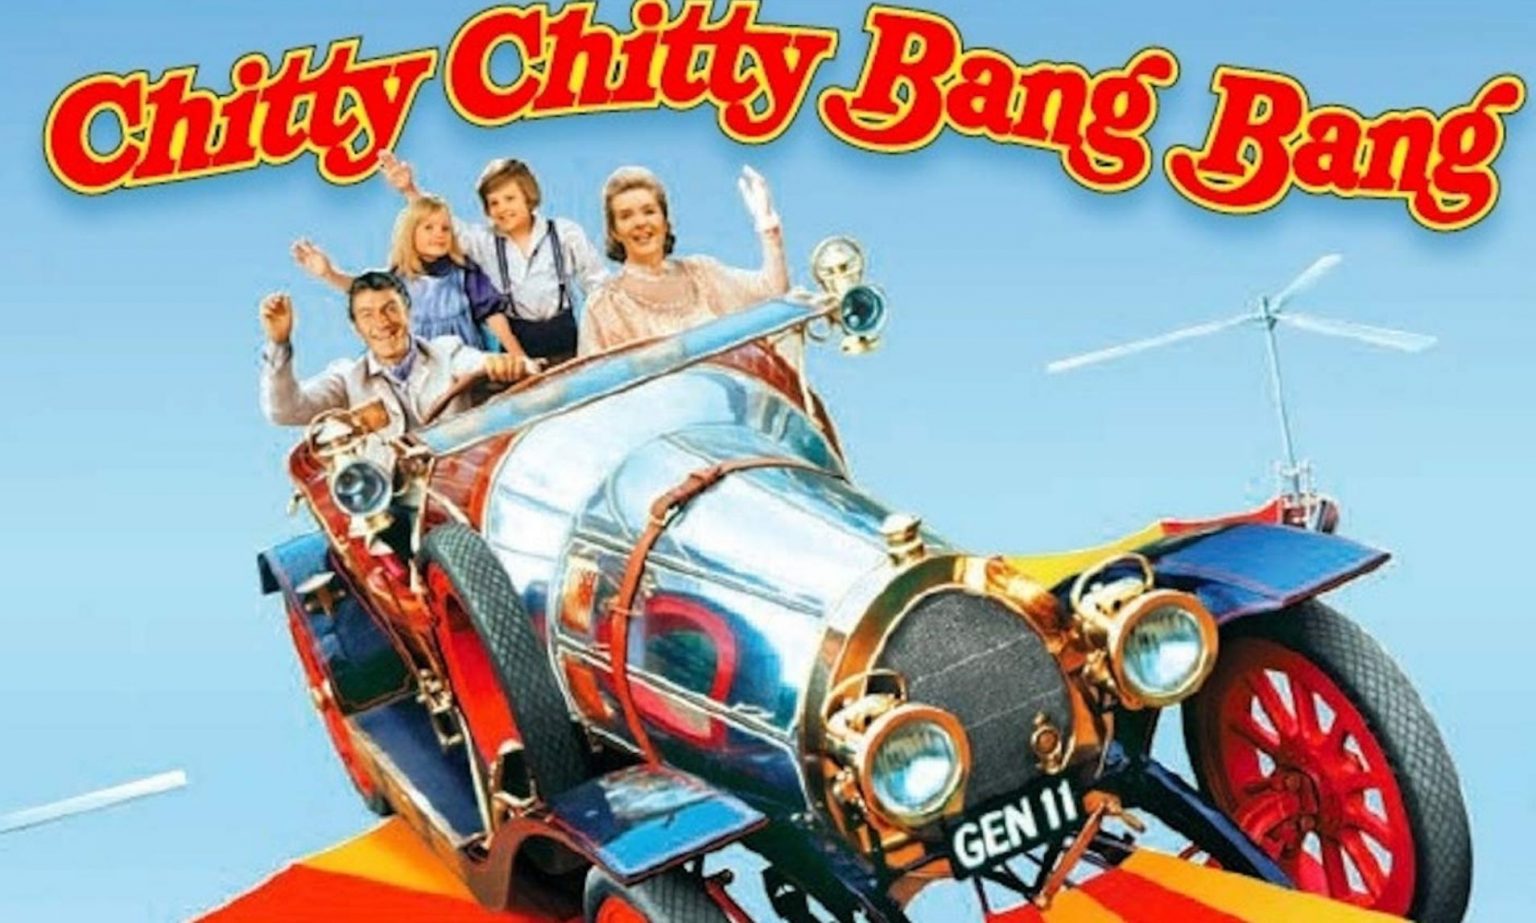 Chitty chitty bang bang. Chitty Chitty Bang Bang 1968. Mighty 44 Chitty Chitty Bang Bang. Chitty Chitty Bang Bang car.